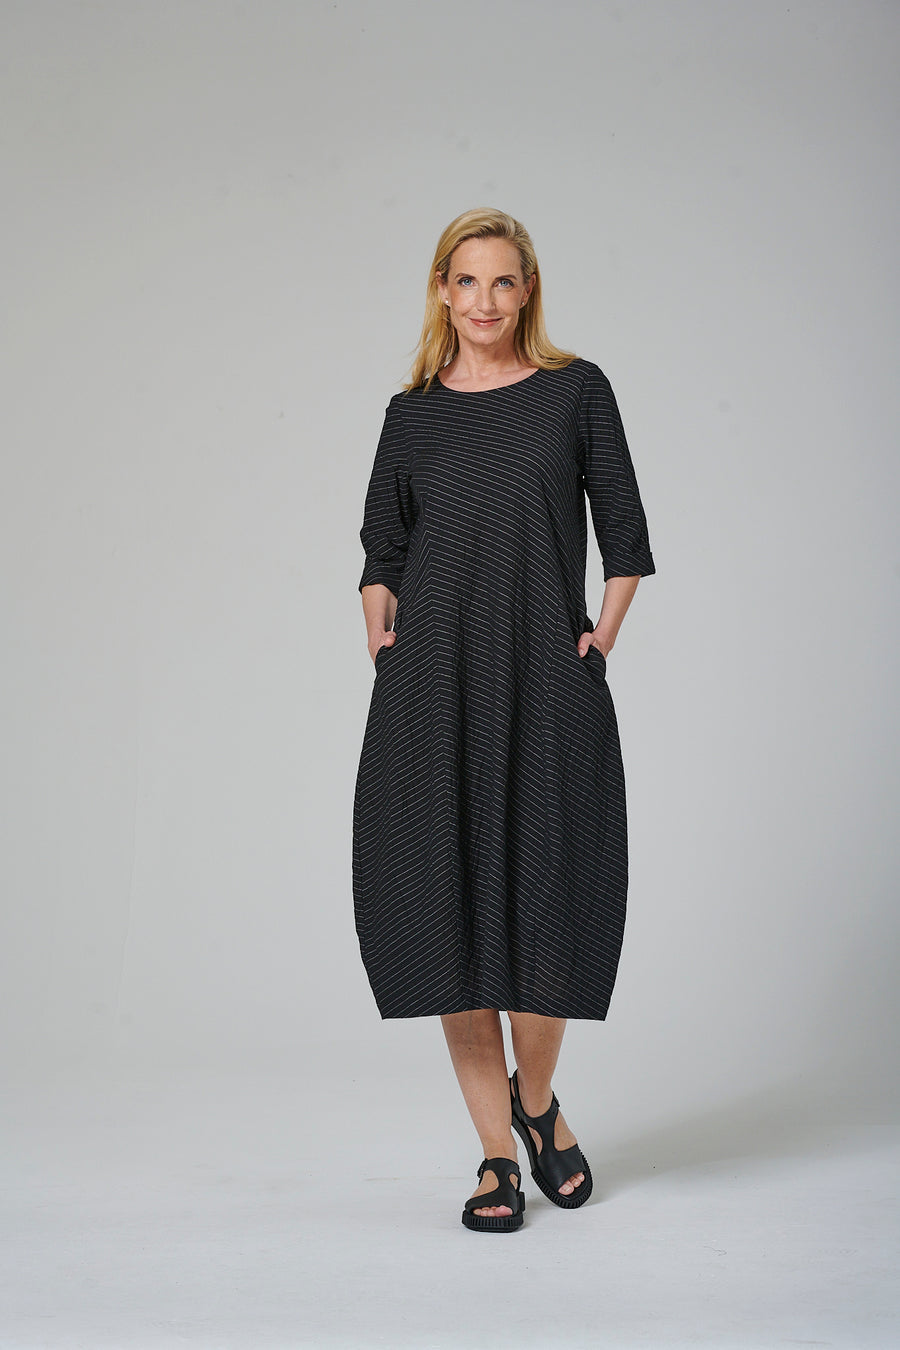 Kleid aus Baumwolle mit 1% Nylon und 1% Elasthan (325k1) gestreift oder unifarben